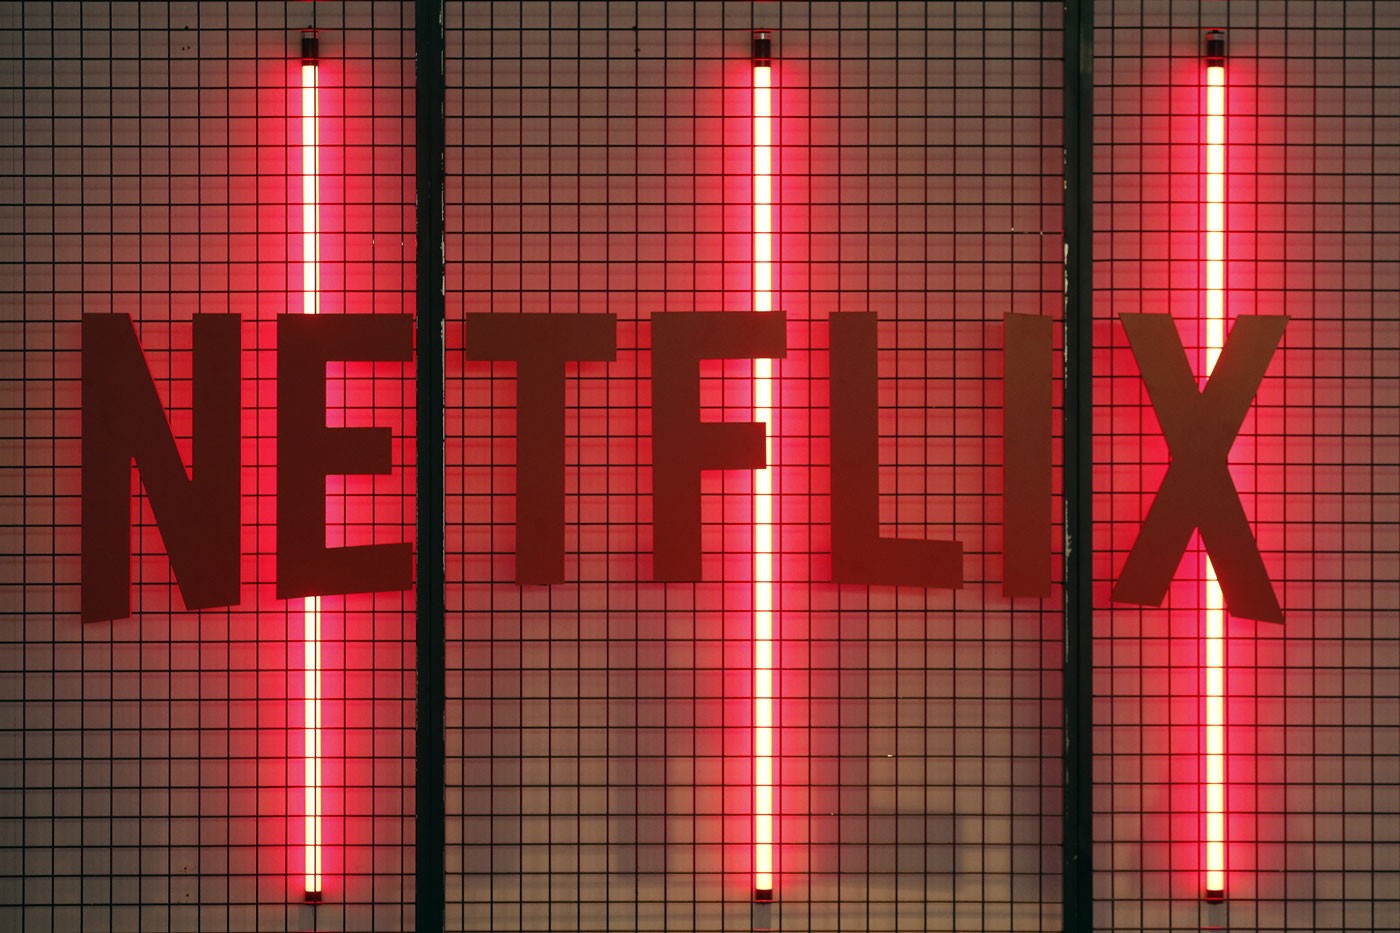 Netflix 自公布 2021 第四季度财报后股价持续下跌